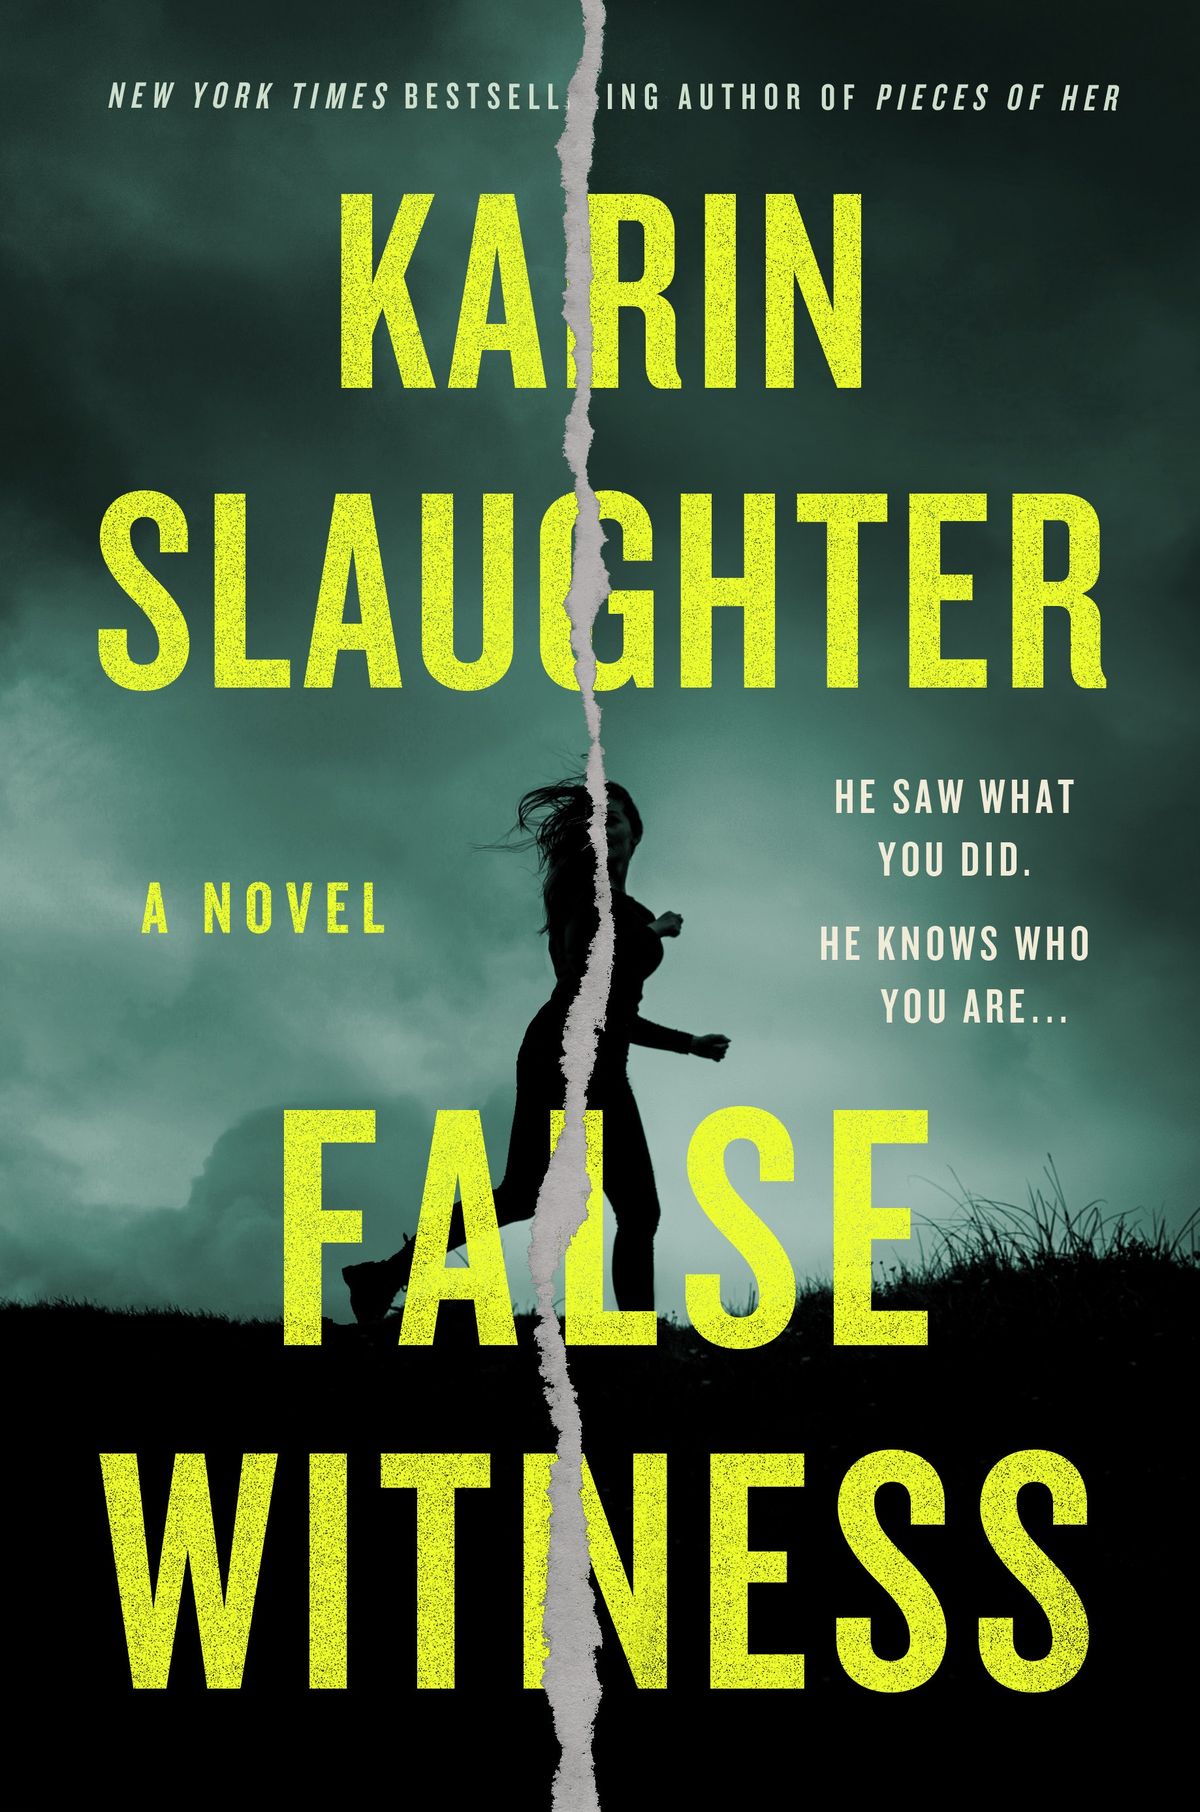 Karin Slaughteri valetunnistaja ilmub järgmisel kuul – aga saate seda kohe lugema hakata